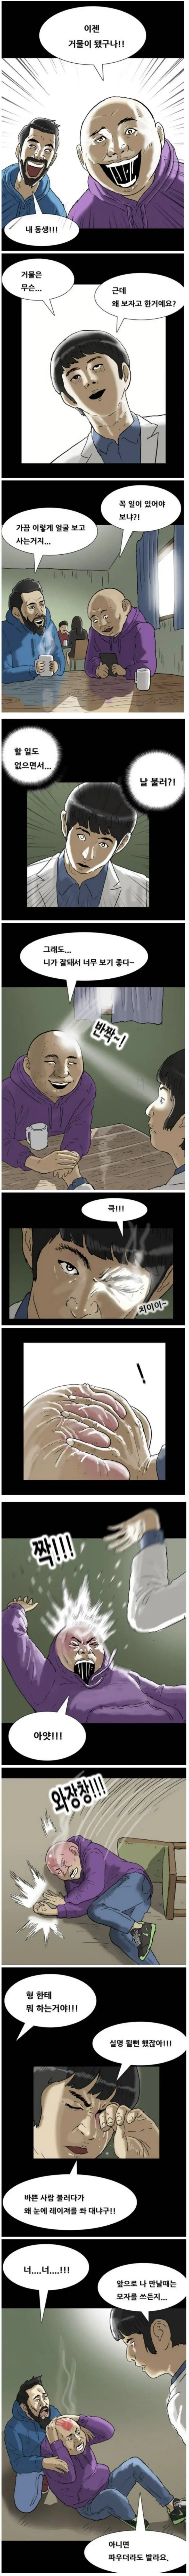 현실이 된 기안84 만화 | mbong.kr 엠봉